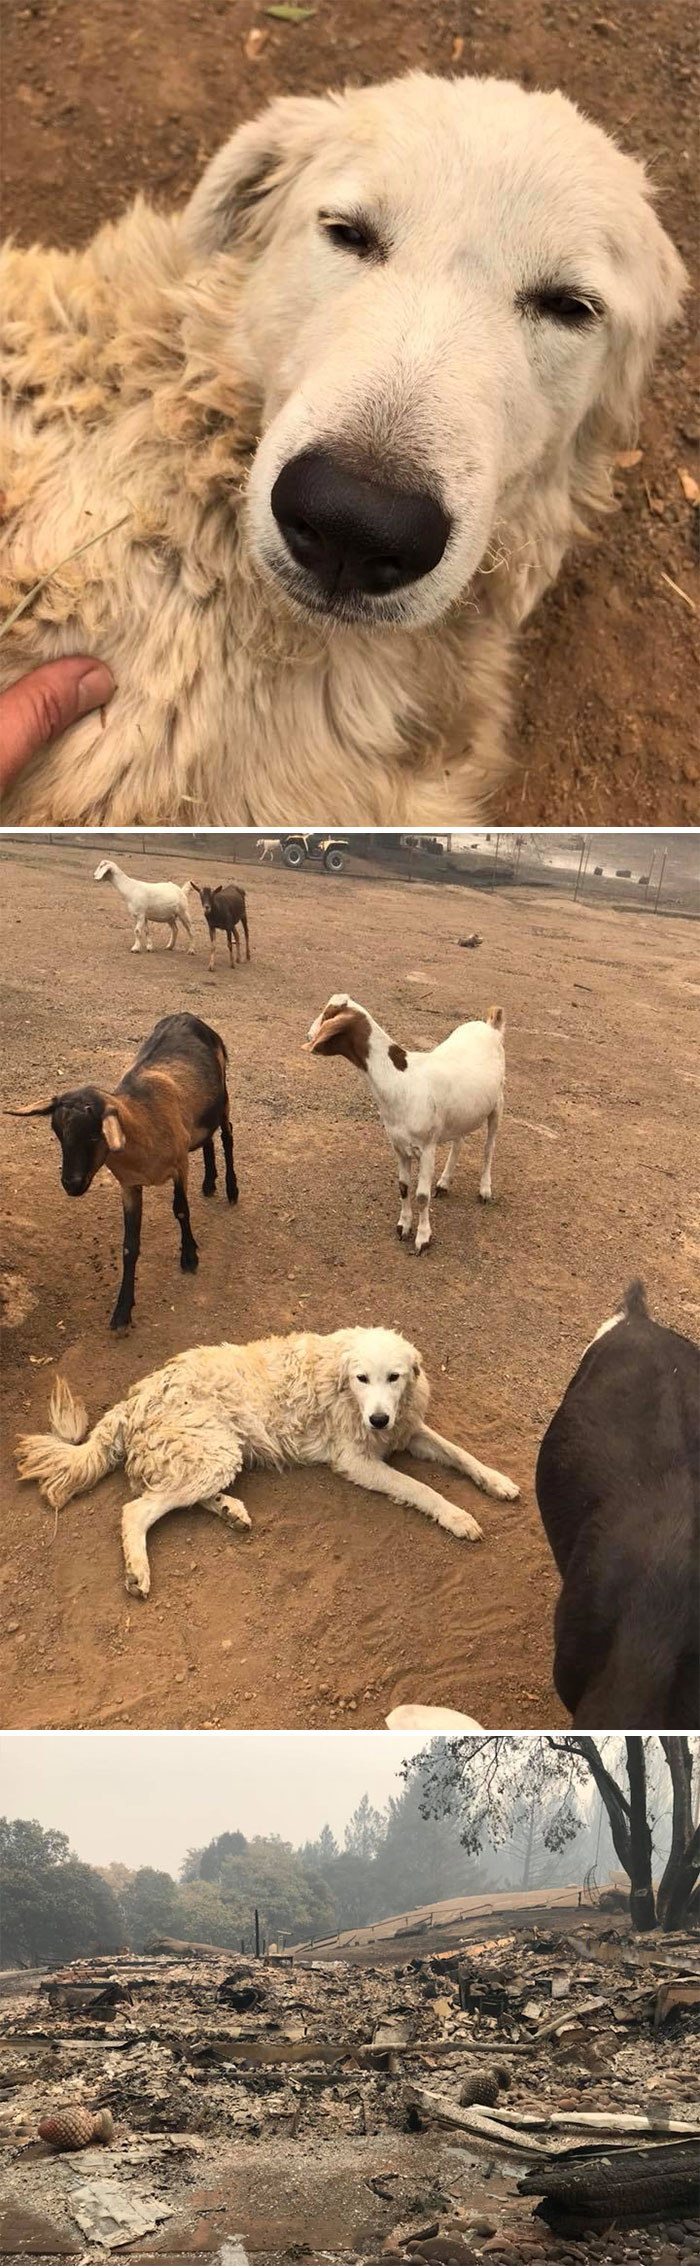 Un intrépido perro pastor de cabras llamado Odín se negó a abandonar su rebaño de cabras durante los mortíferos incendios forestales de California en 2017, mientras sus dueños corrían para ponerse a salvo. Días después, su familia regresó a su casa destruida y lo encontró a él y a las cabras con vida